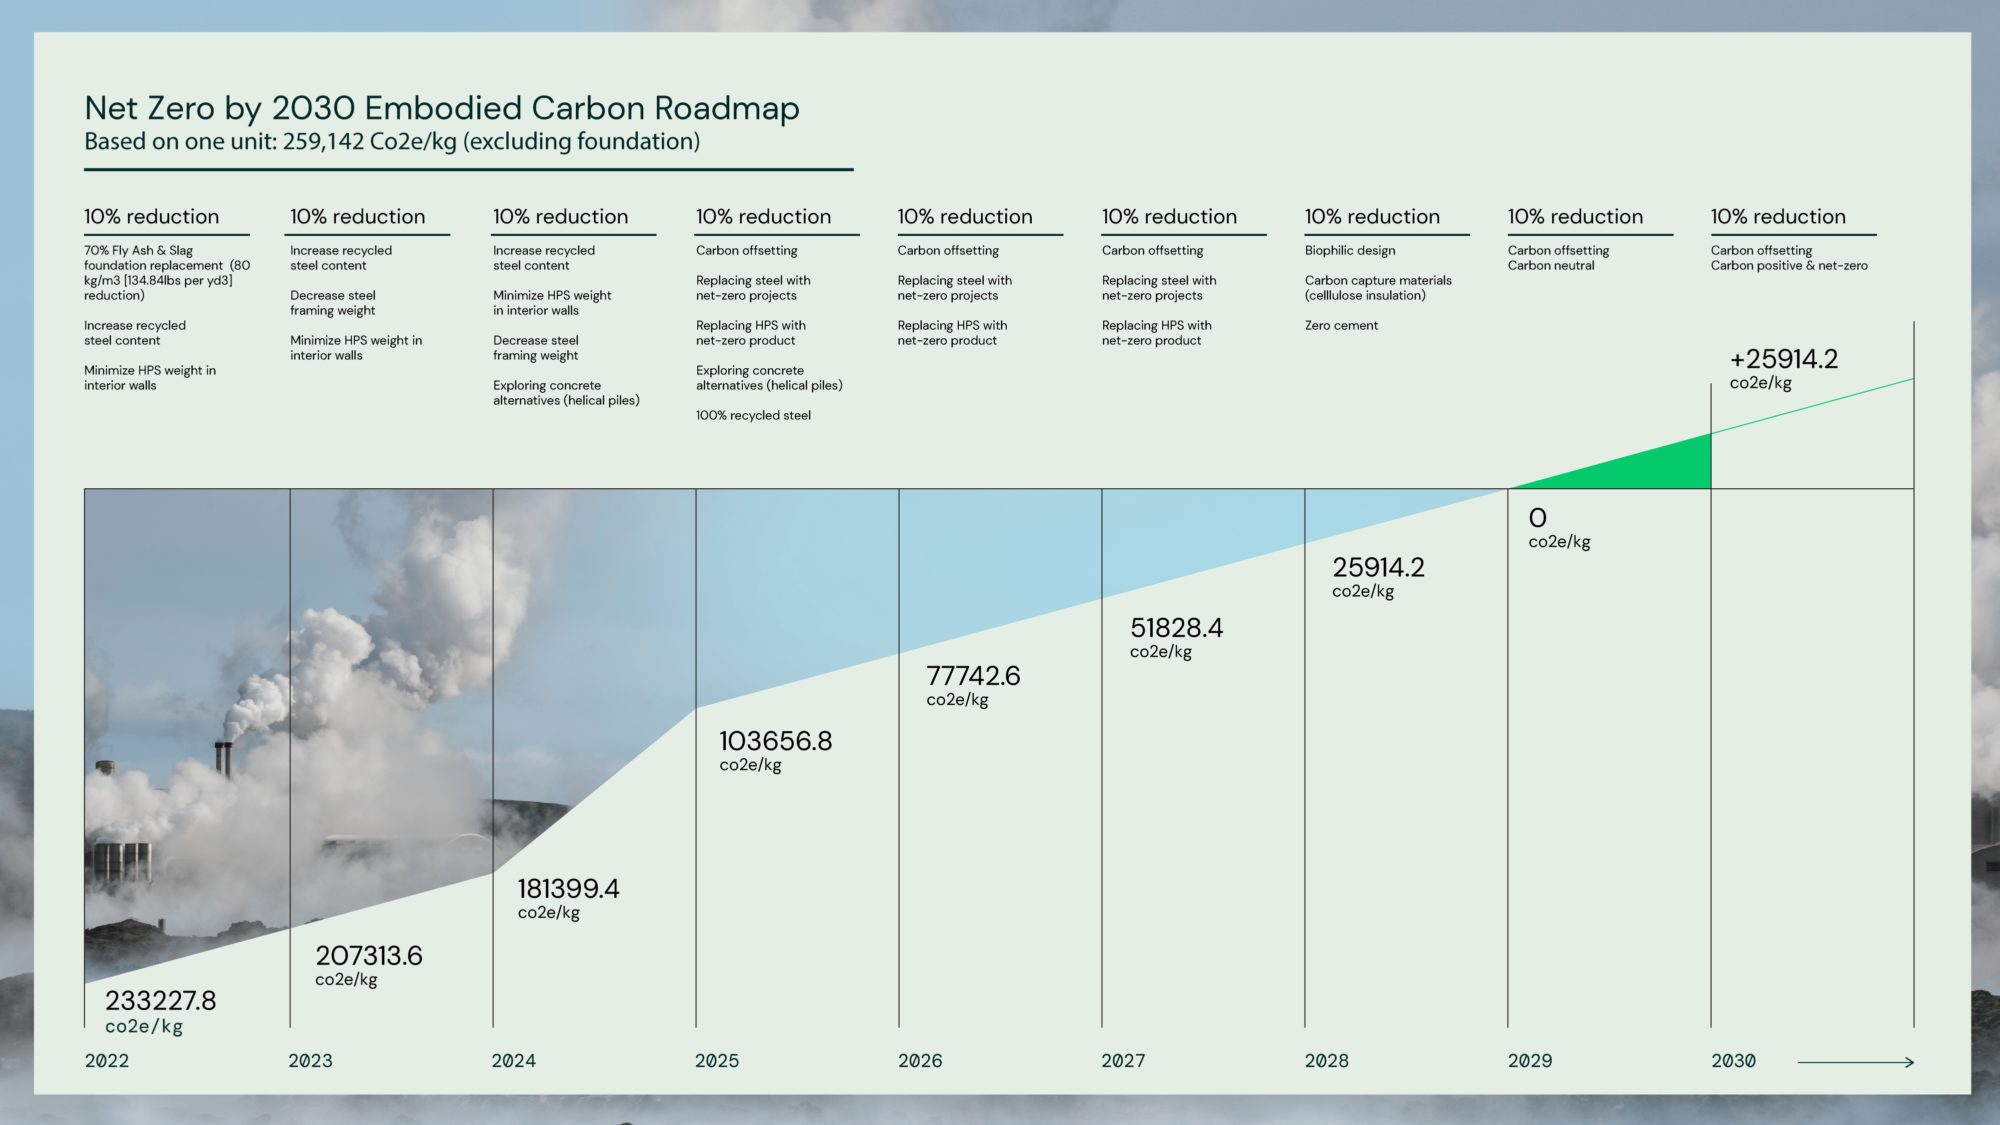 Our Net Zero carbon roadmap